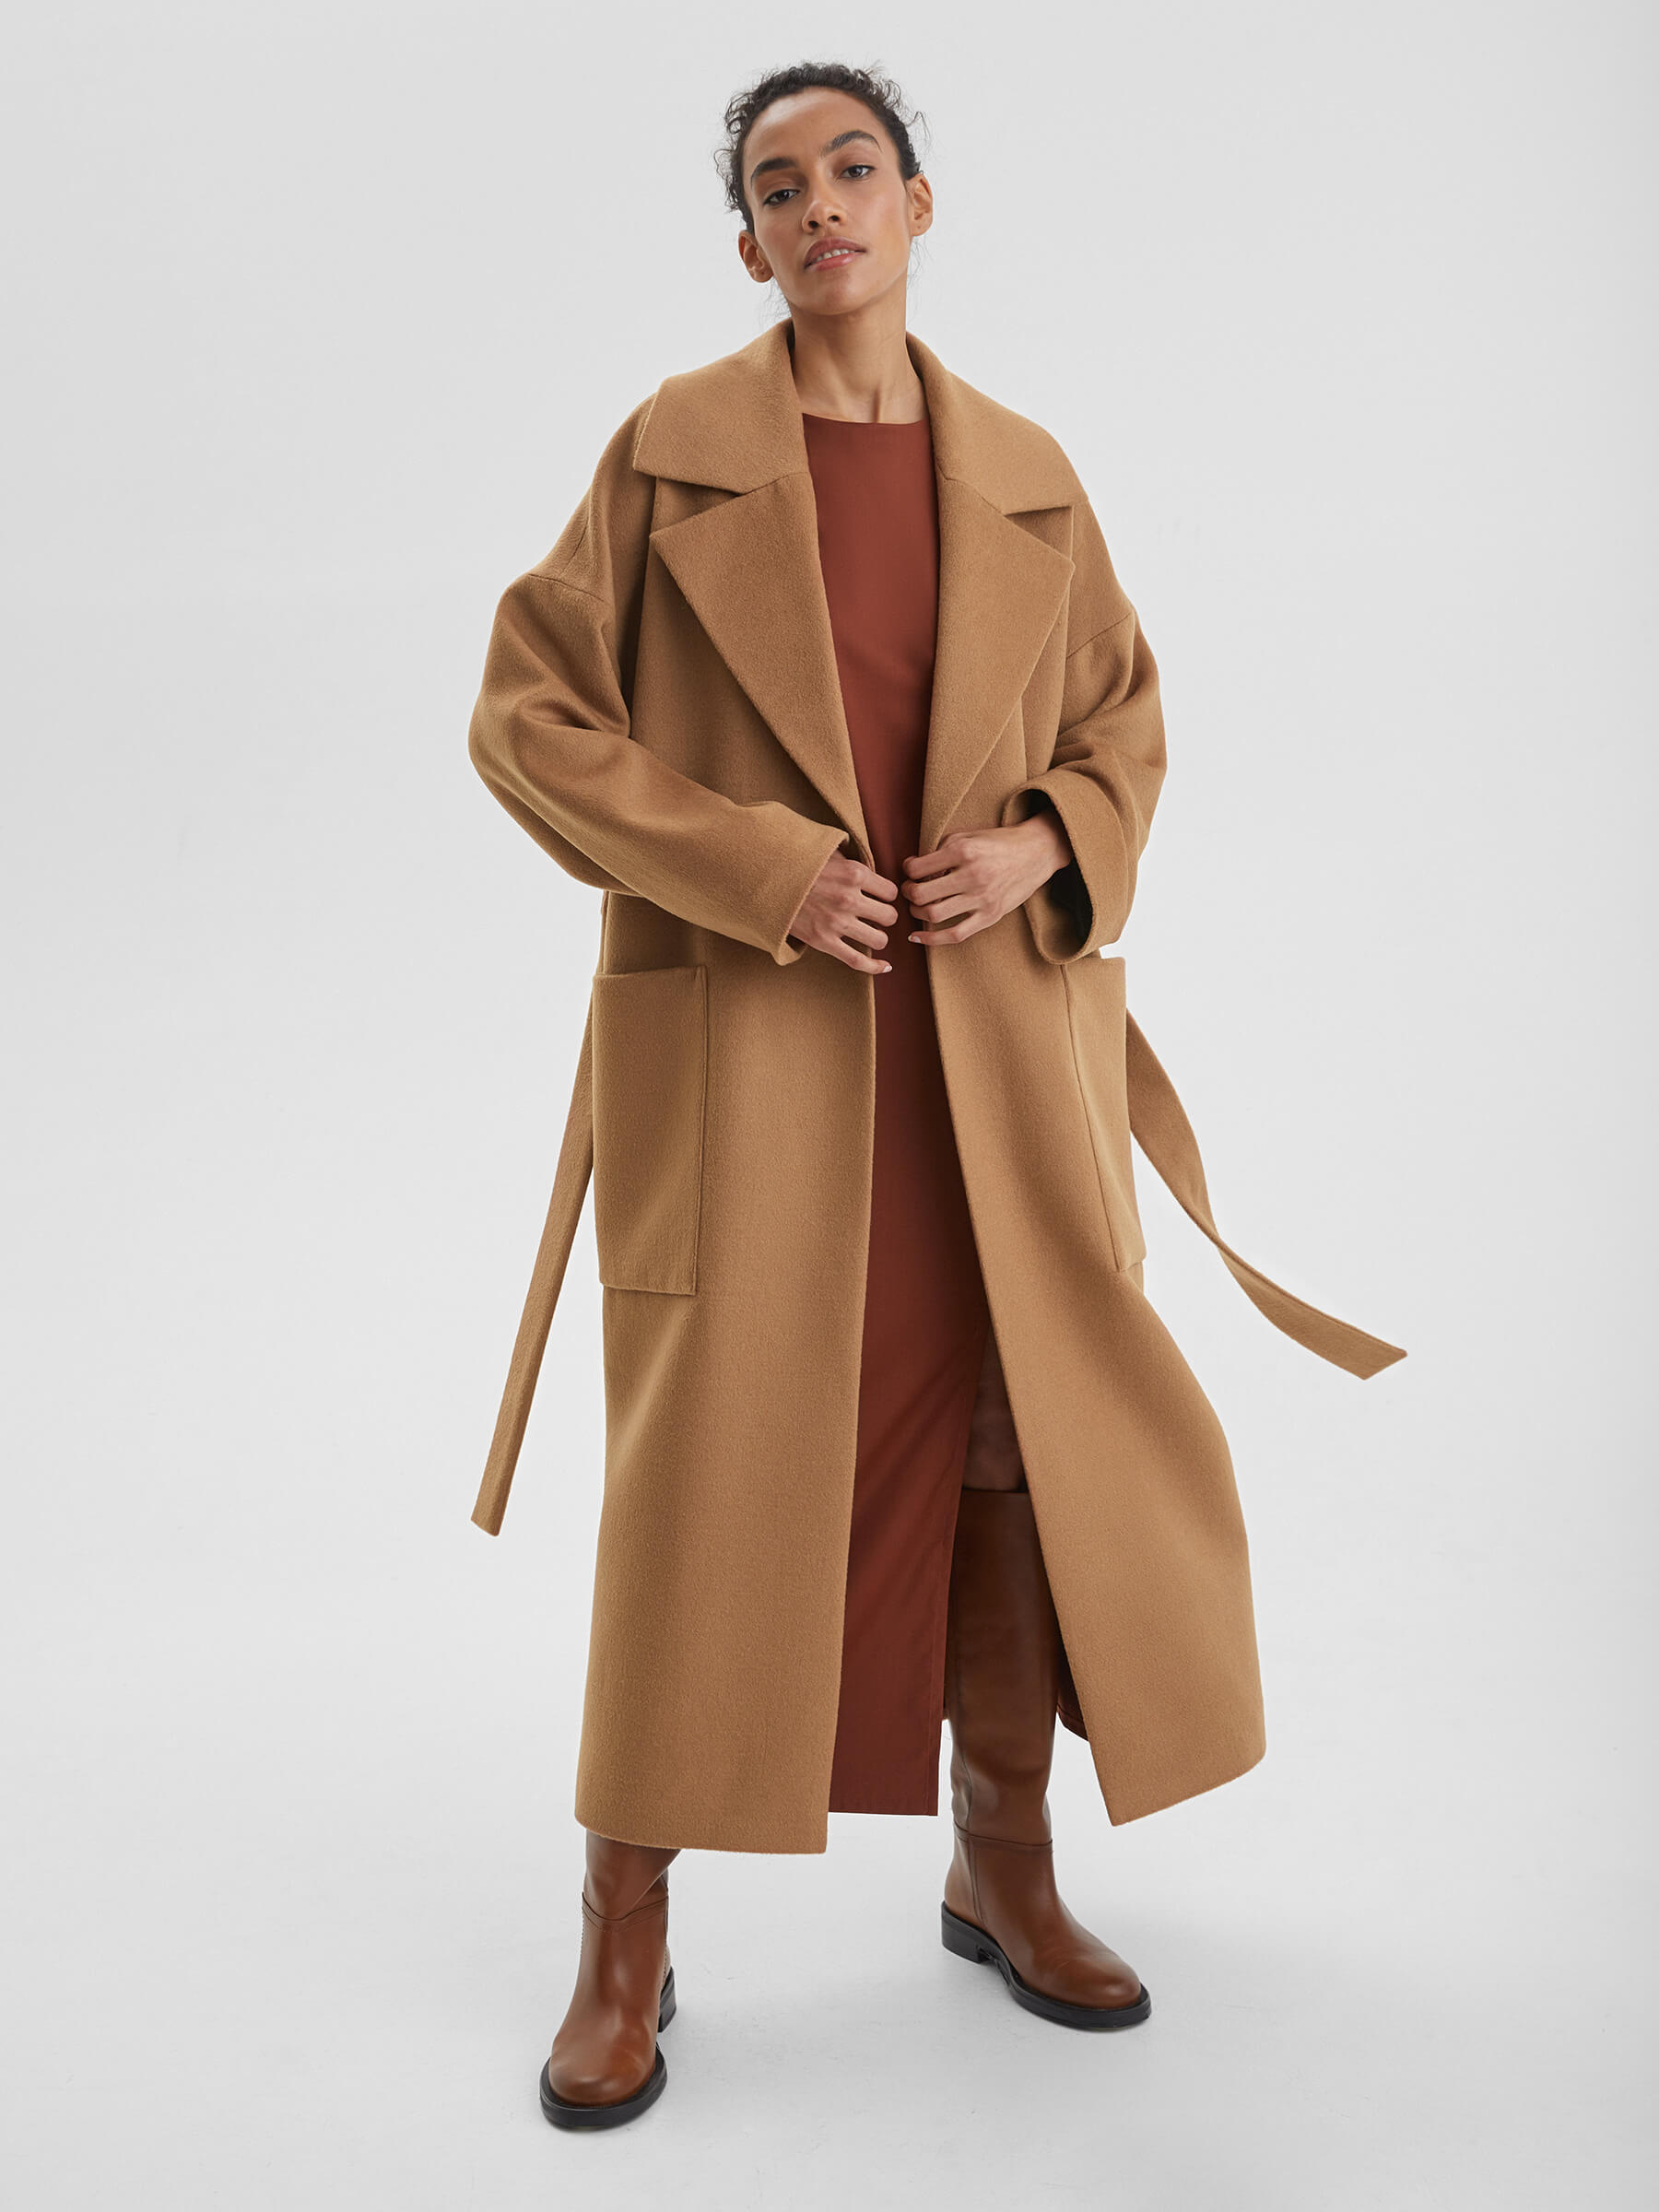 женское хлопковое пальто с большим меховым воротником свободного покроя средней длины m289 Пальто женское длинное с объемными карманами и поясом, цвет – кэмел